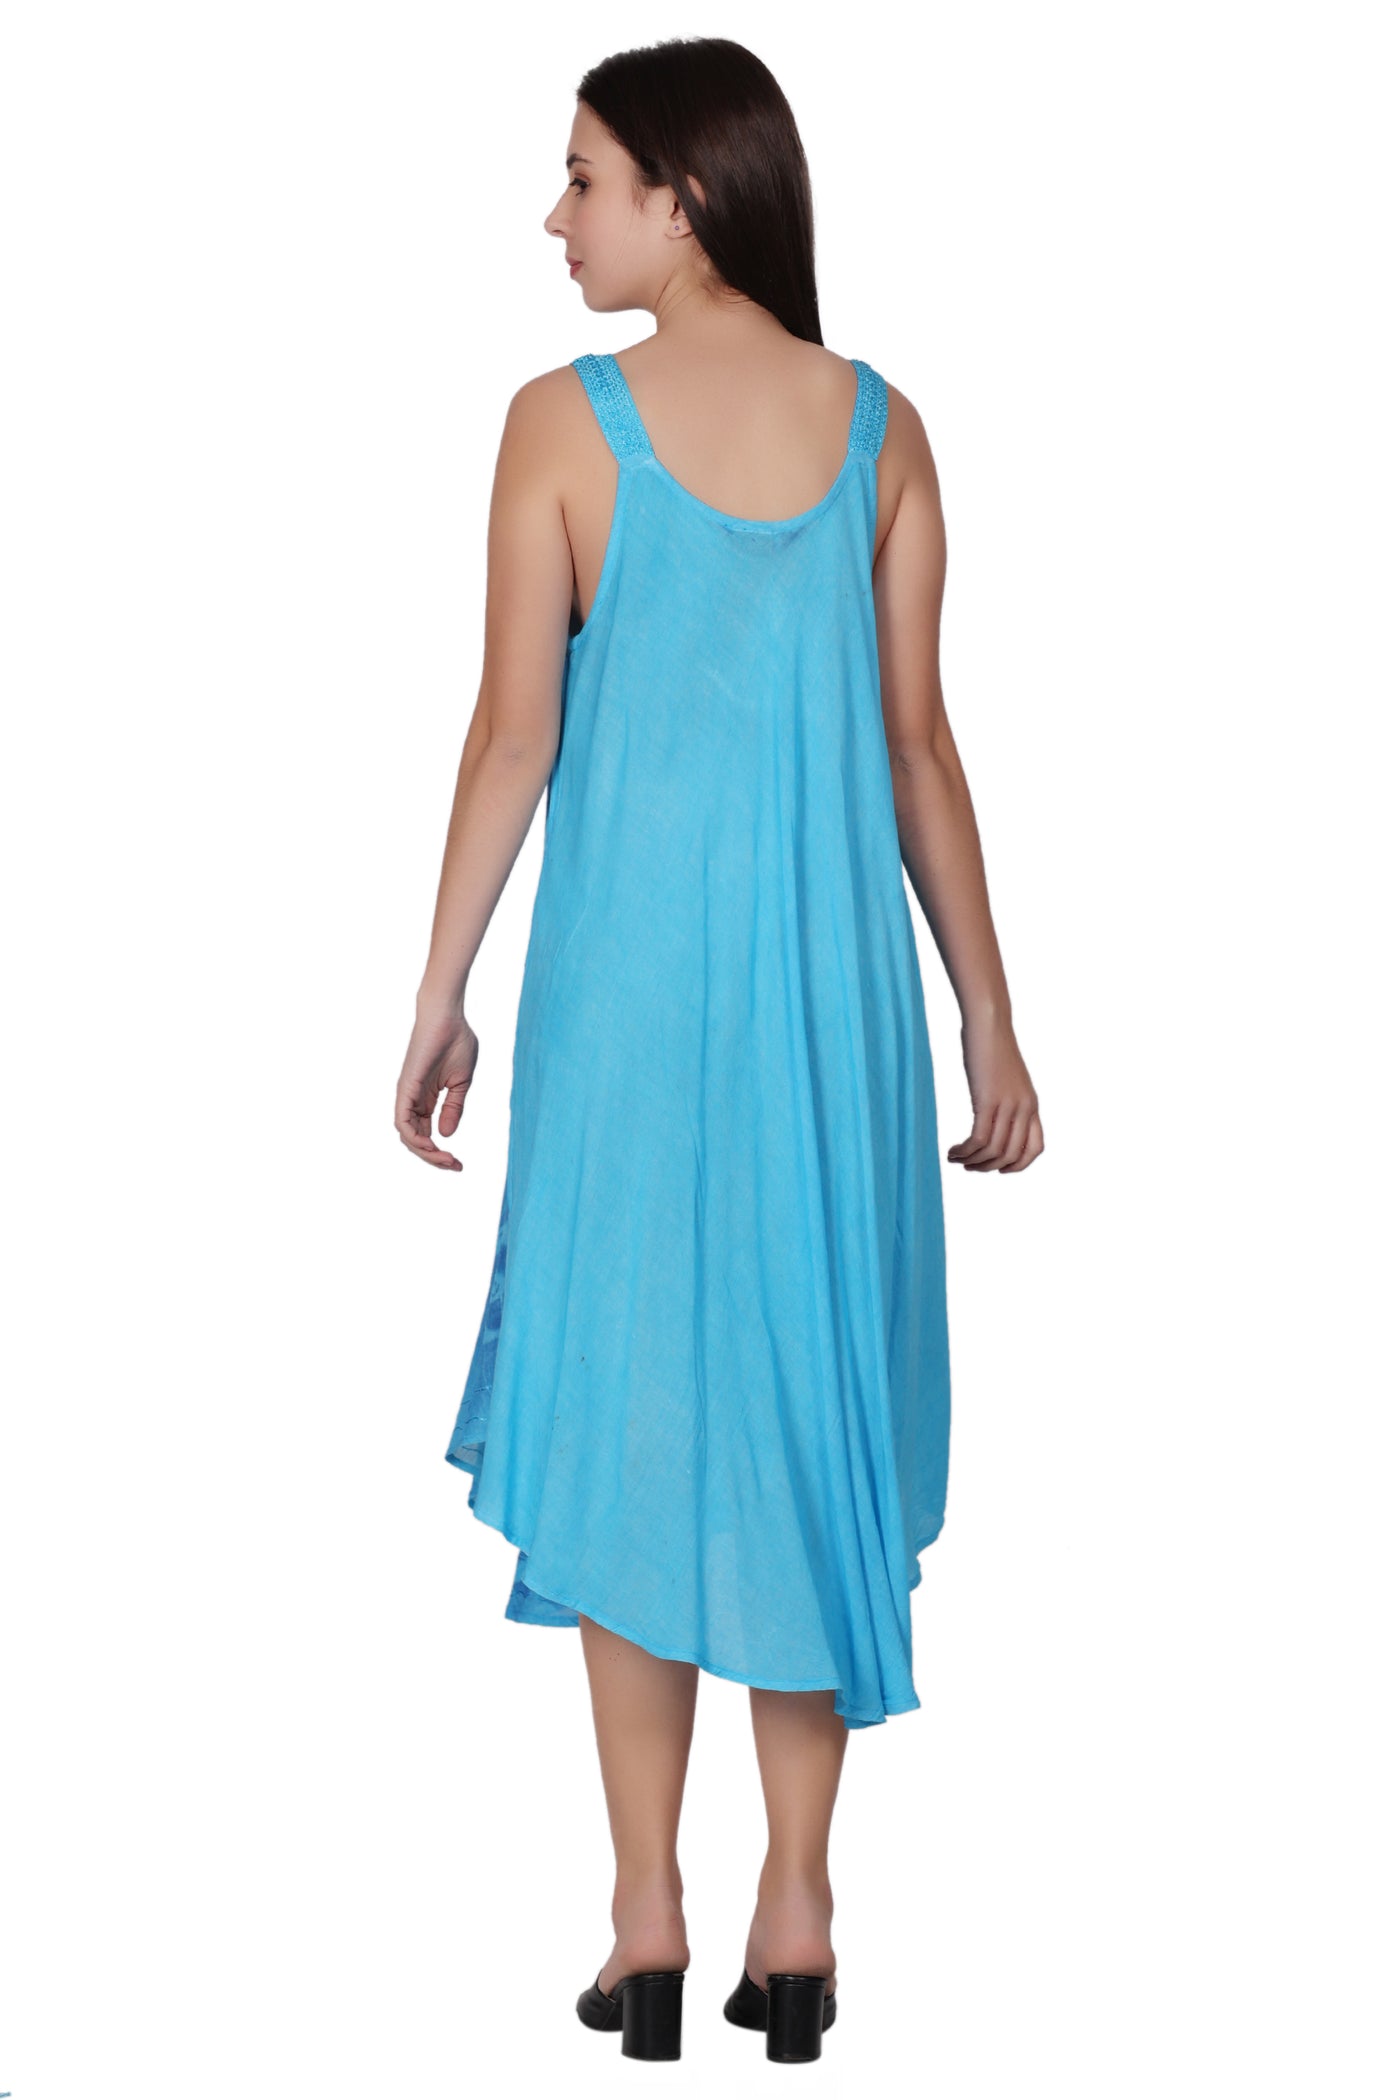 V-Neck Floral Tie Dye Beach Dress 482154-V